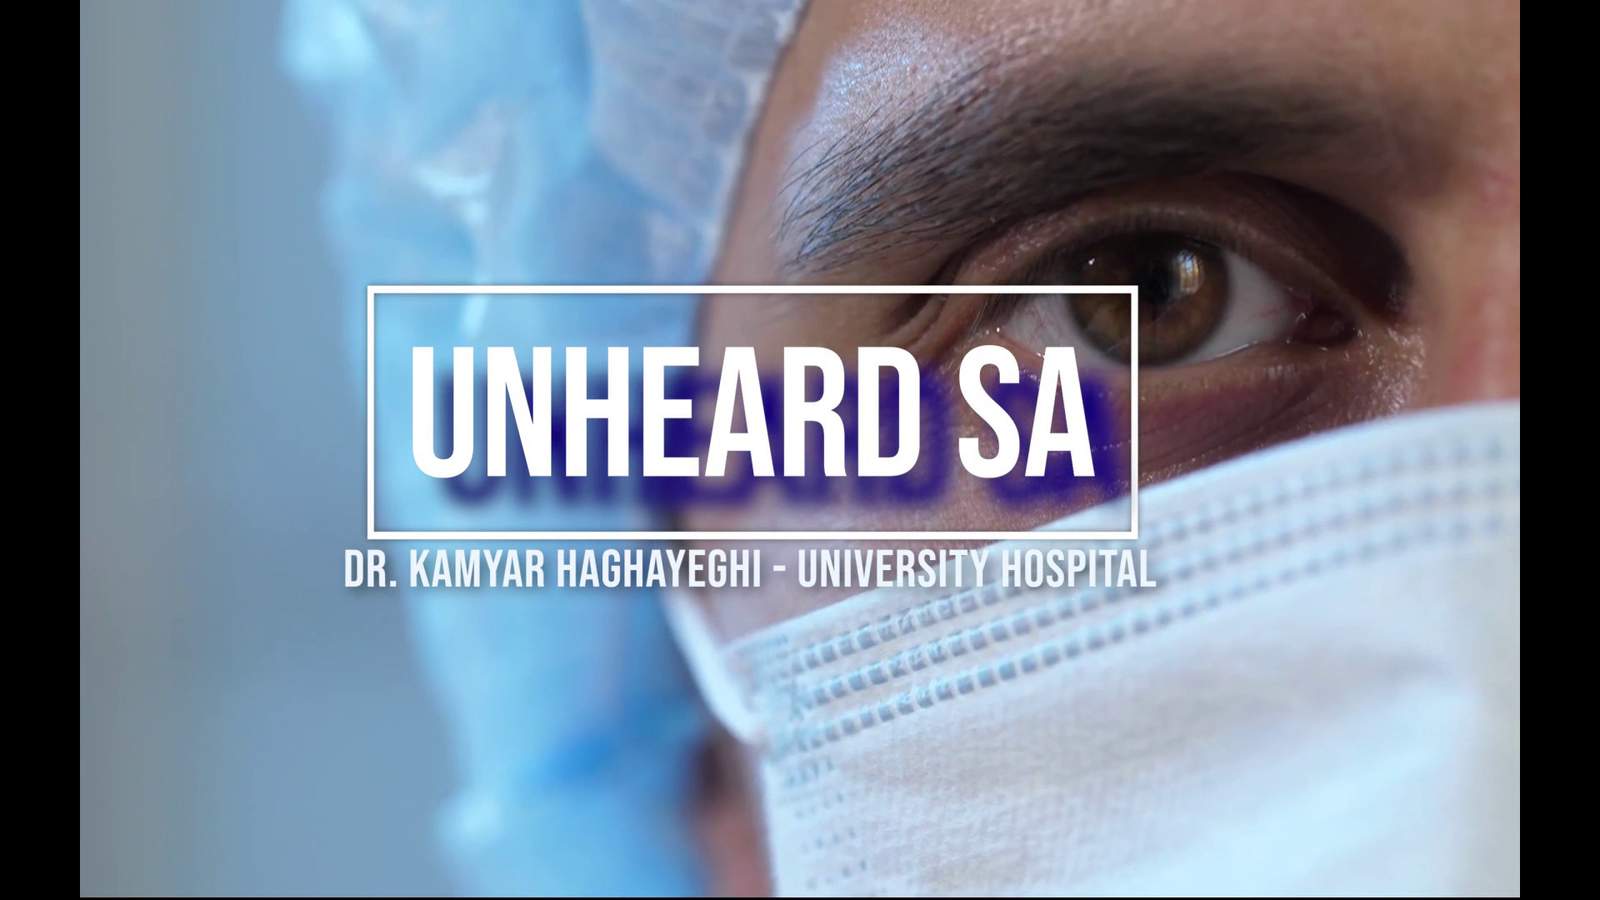 Unheard SA - Dr. Kamyar Haghayeghi